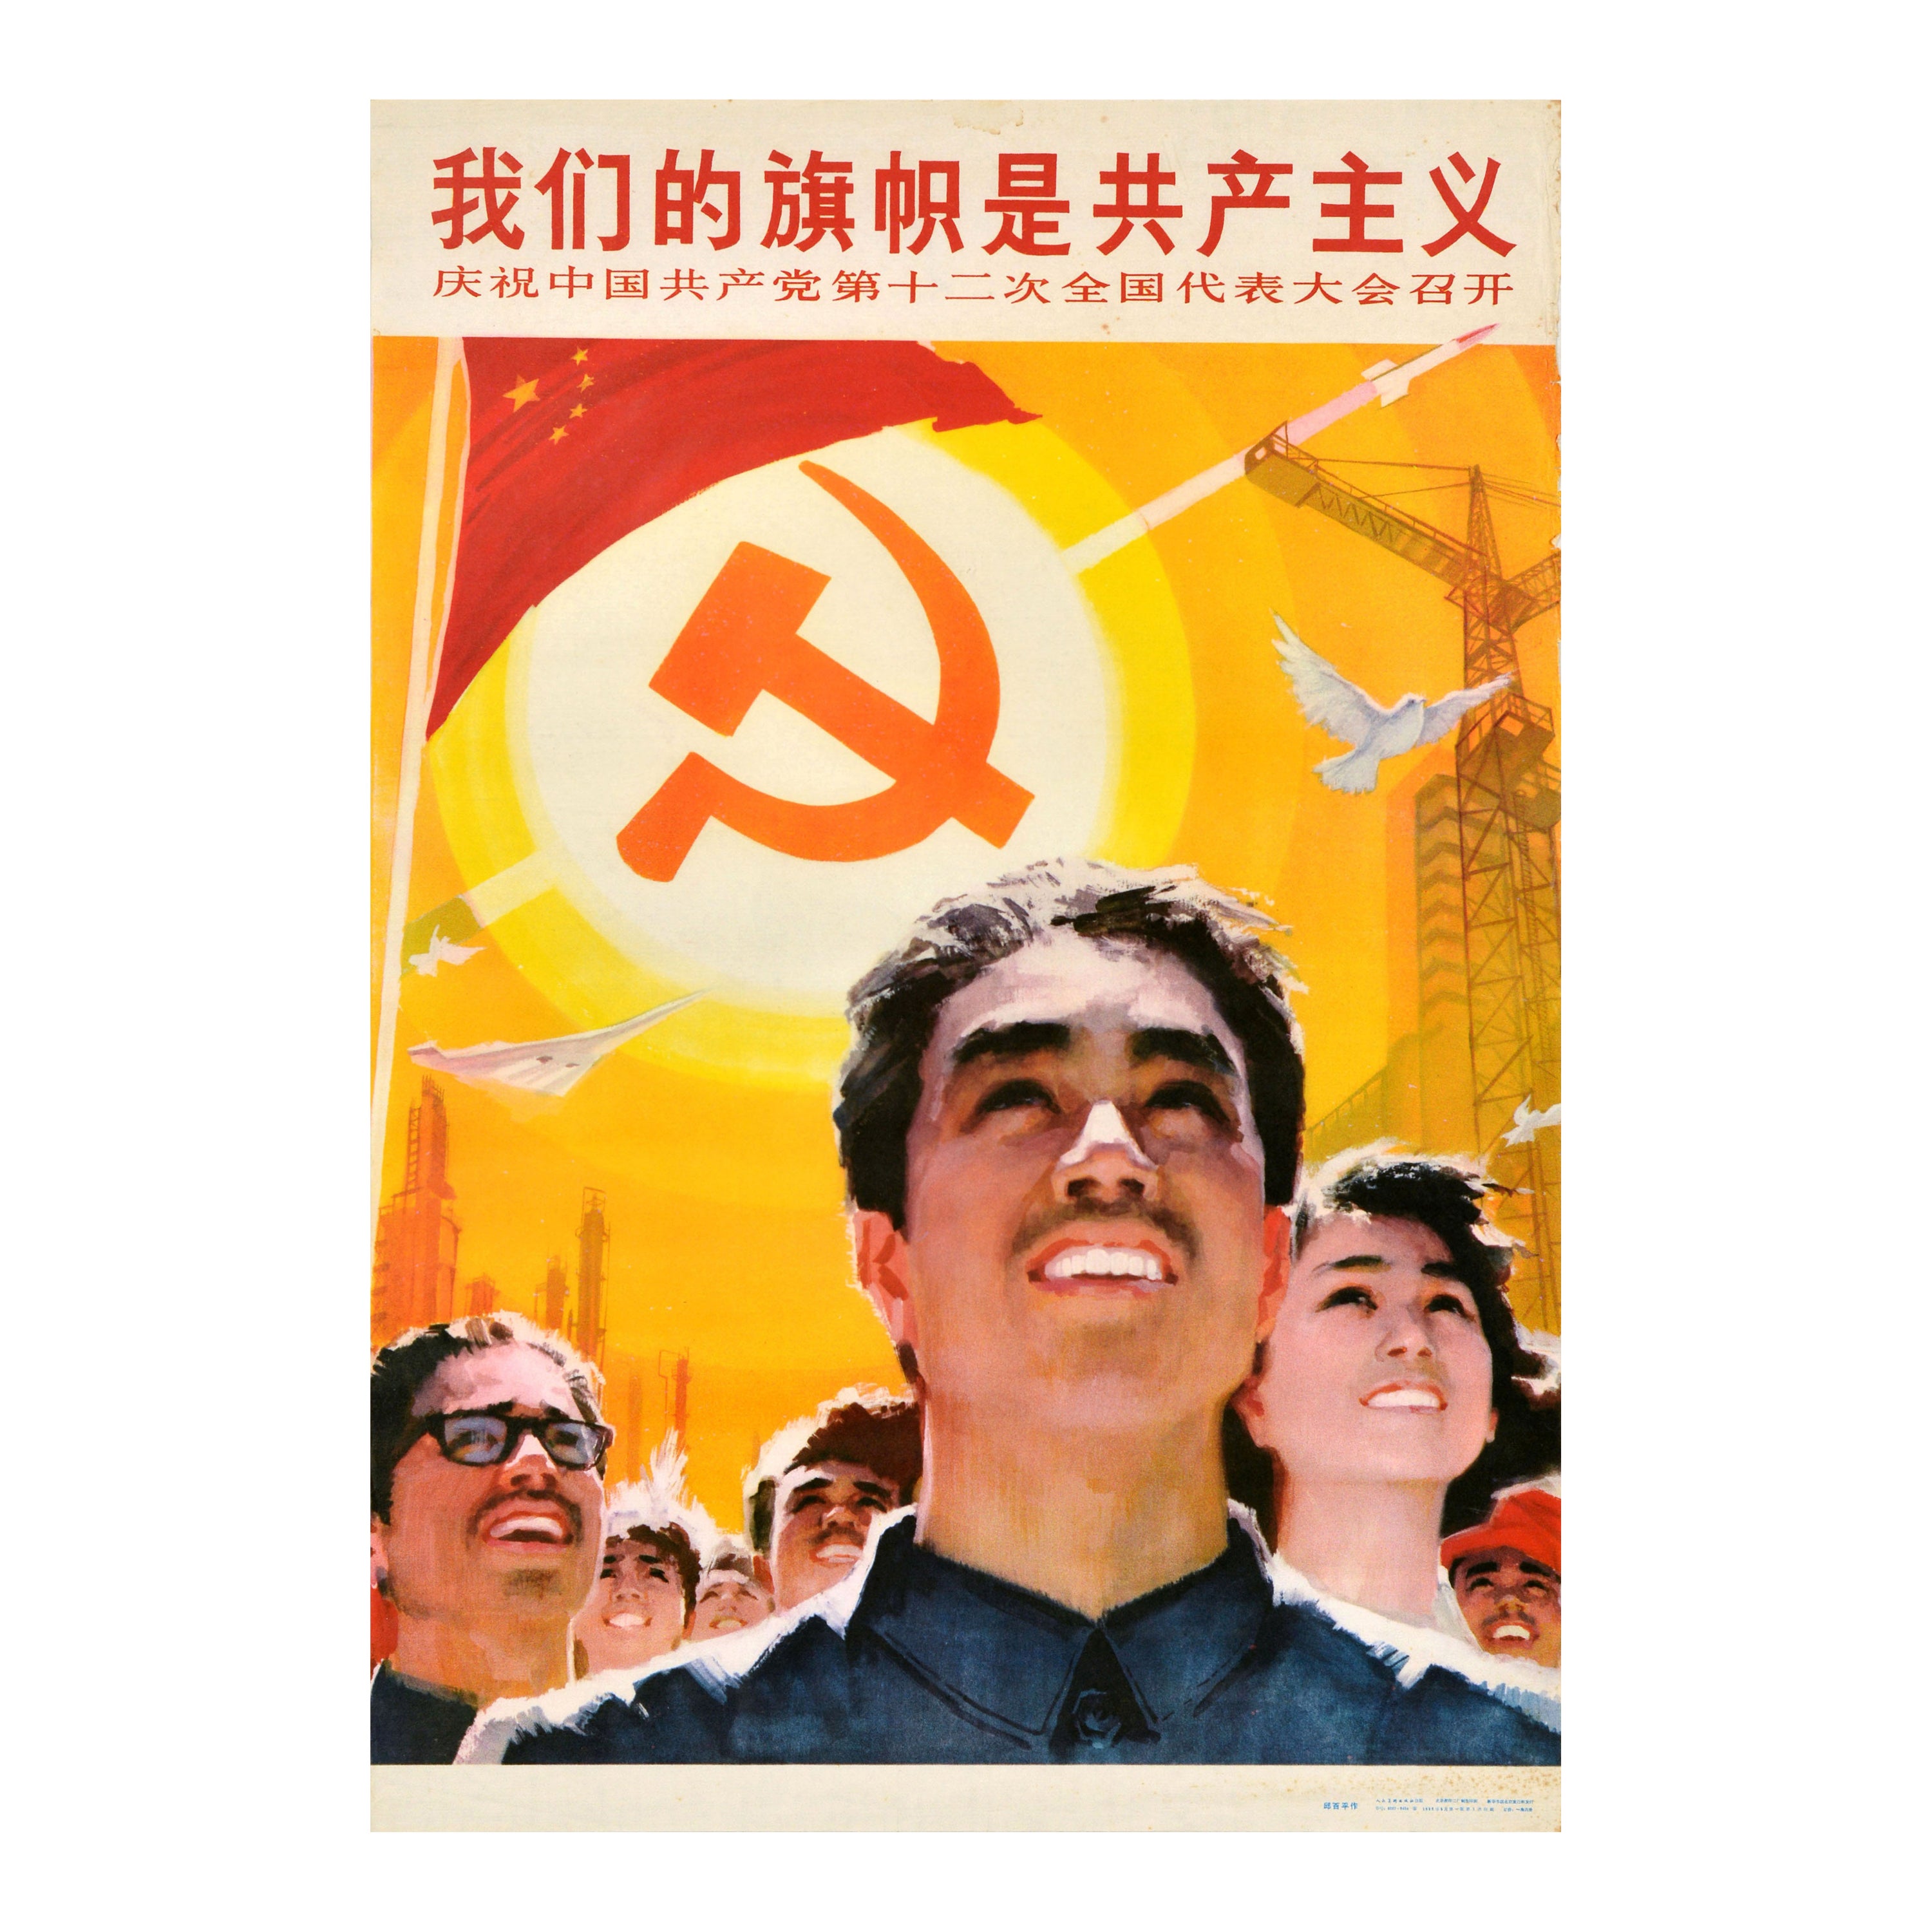 Originales Original-Vintage- Propagandaplakat der chinesischen Kommunistischen Partei, Unsere Flagge ist Kommunismus